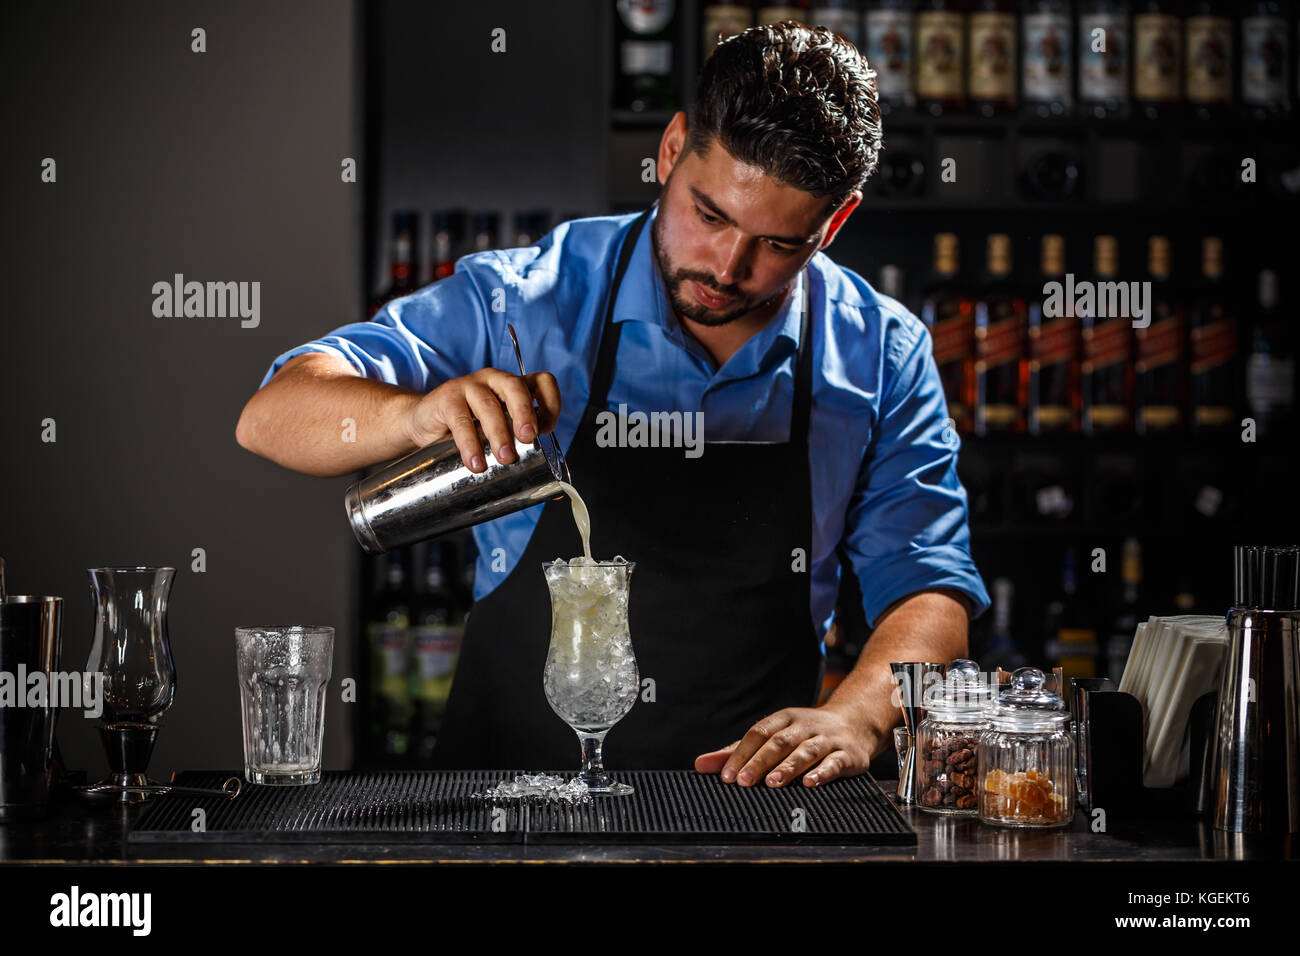 Barman with shaker preparing pina colada cocktail at bar Stock Photo